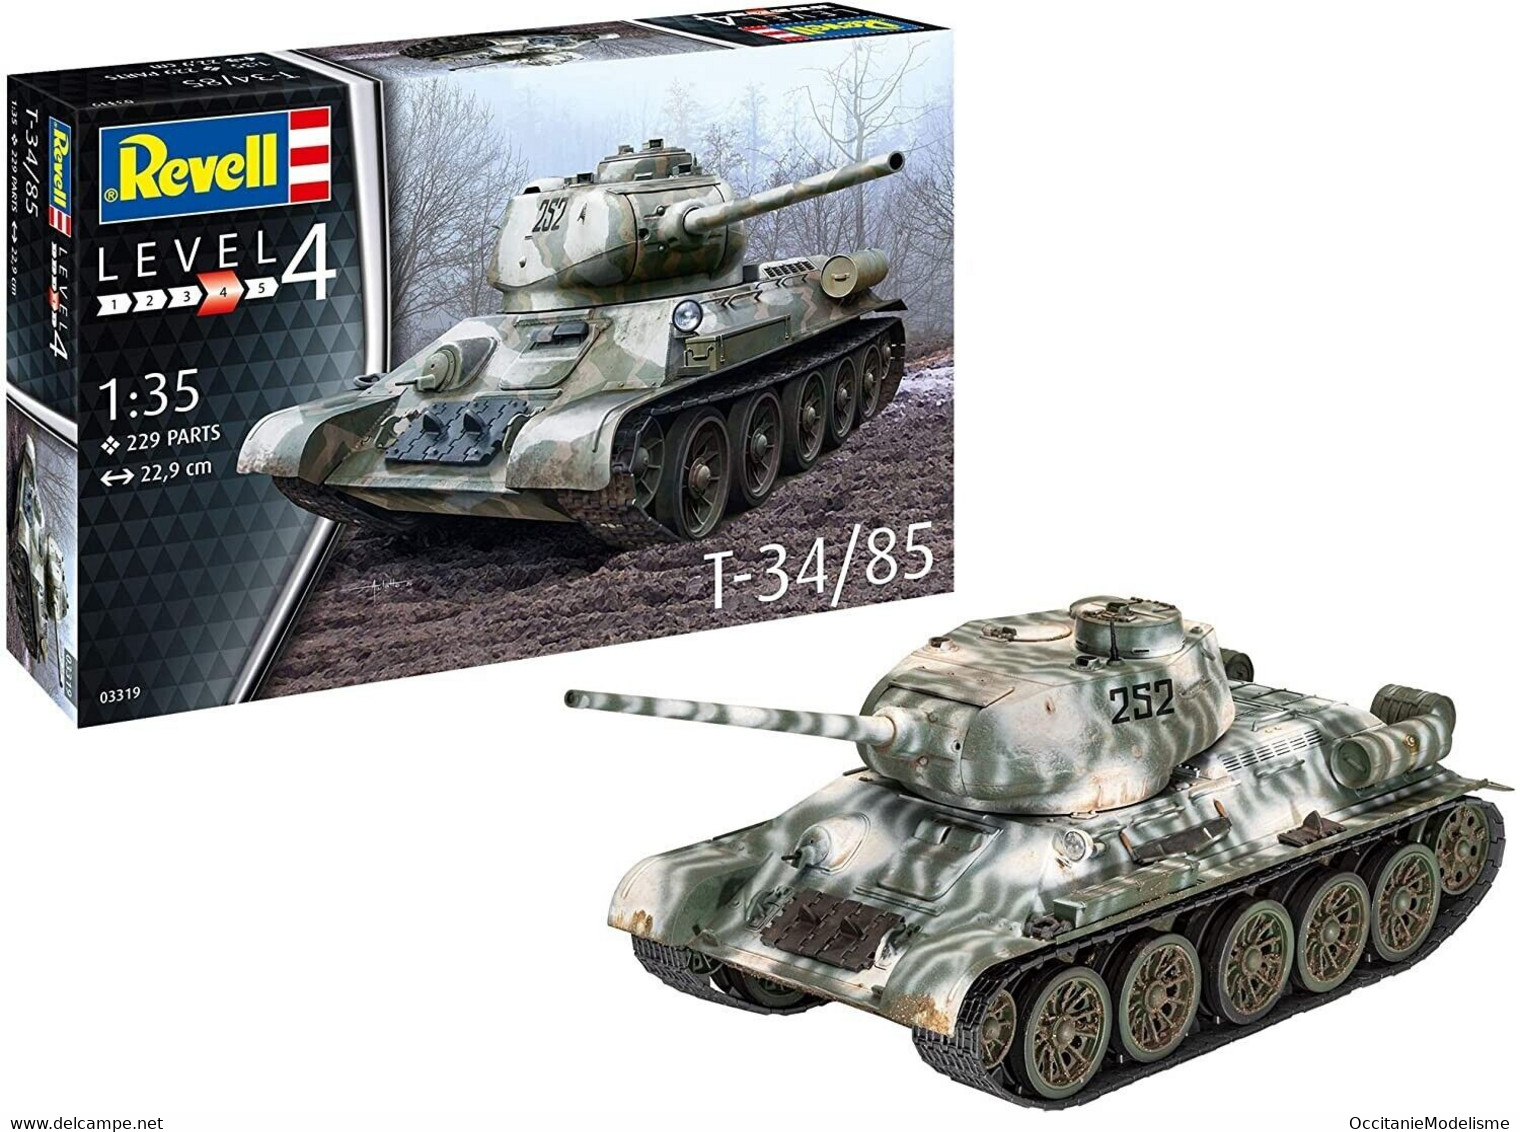 Revell - CHAR Soviétique T-34/85 T-34 85mm Maquette Militaire Kit Plastique Réf. 03319 Neuf NBO 1/35 - Vehículos Militares